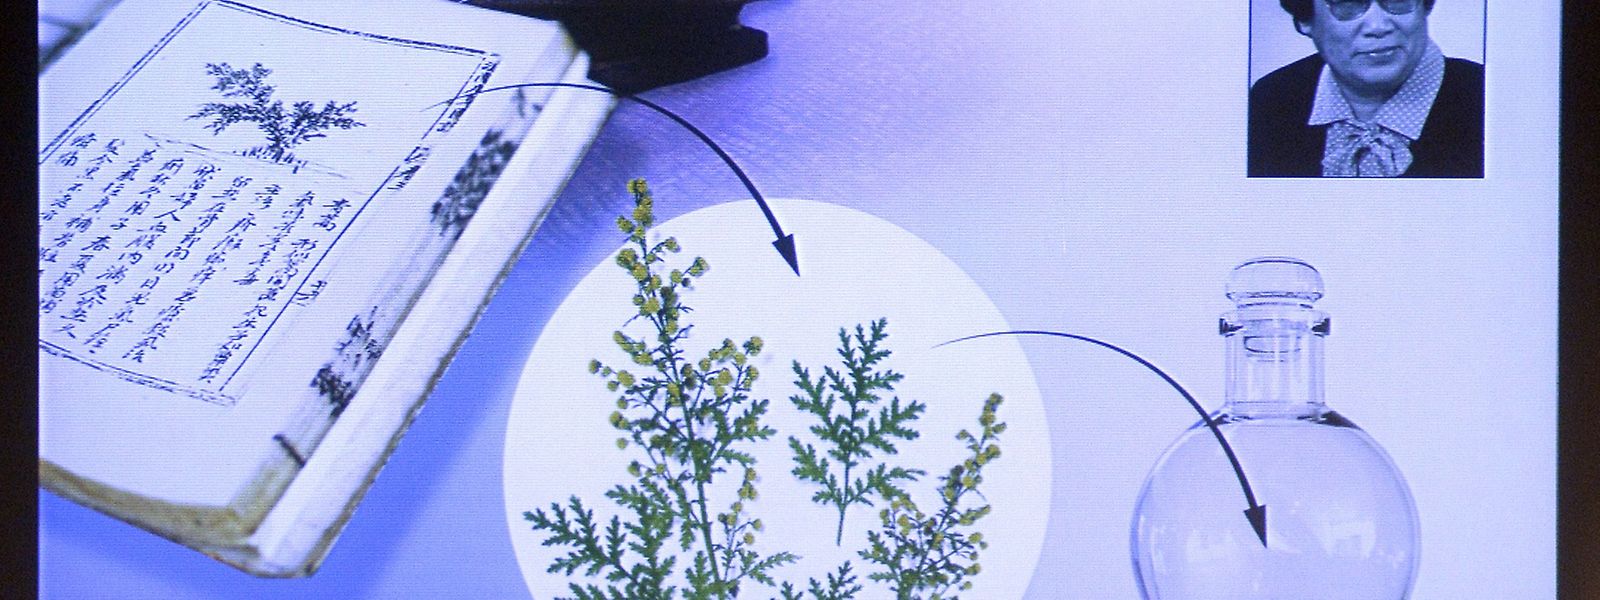 Die Chinesin Youyou Tu forscht an neuen Methoden zur Bekämpfung von Malaria dank der Artemisia-Pflanze.